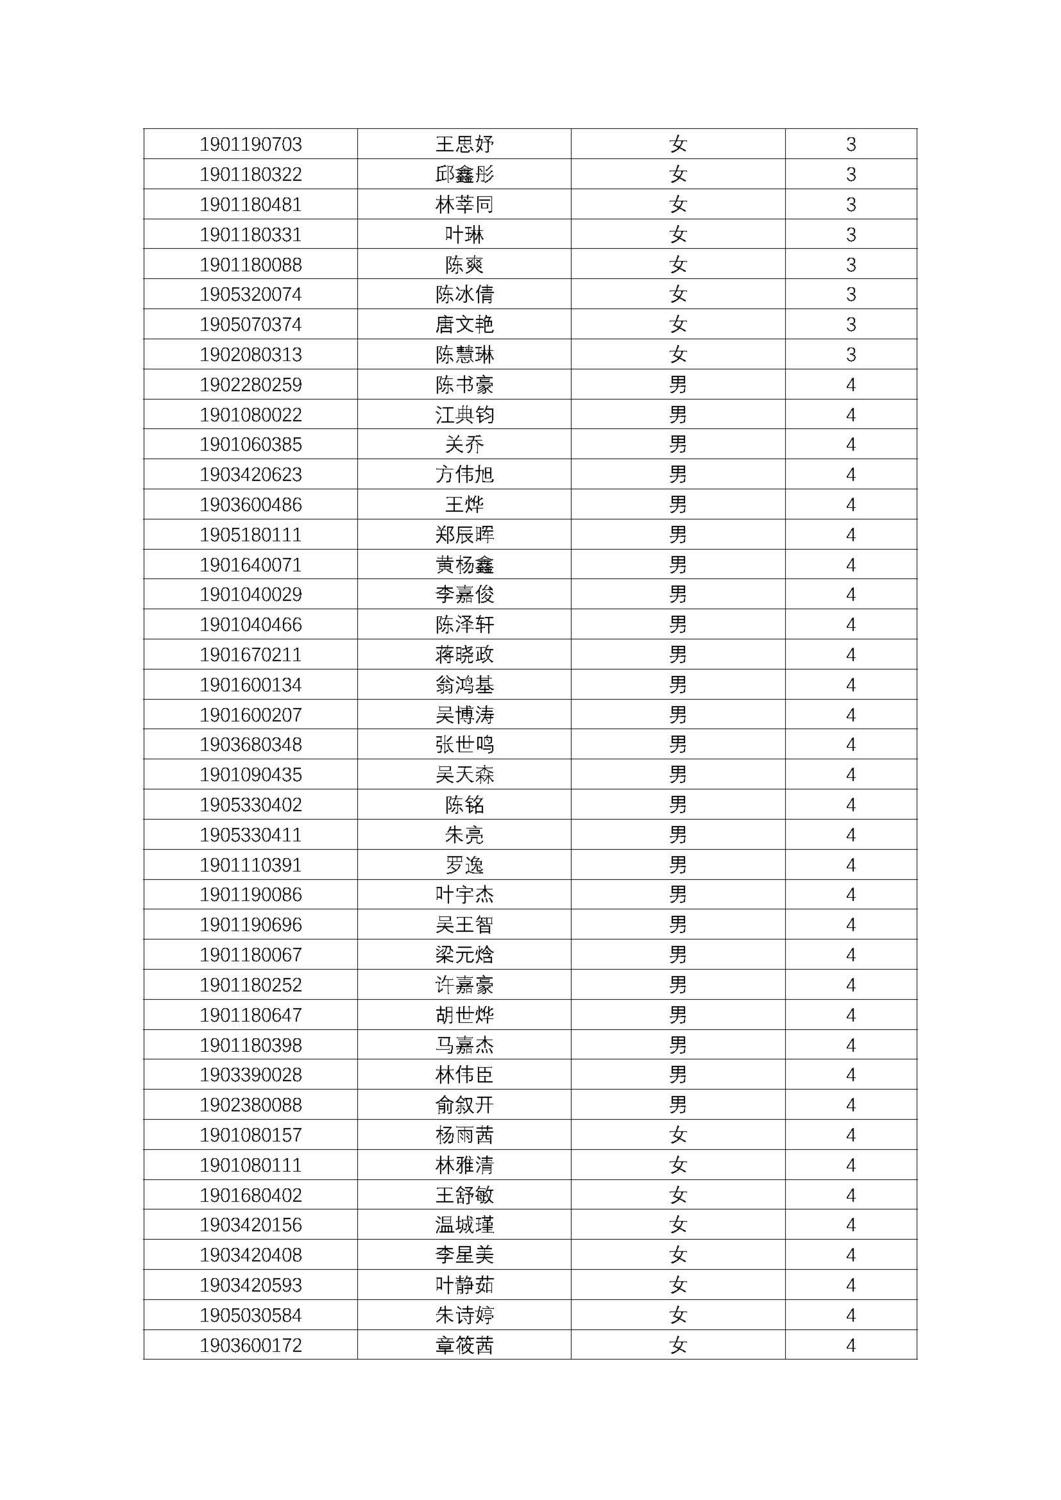 福州第十八中学2019级高一新生分班名单及报到须知_页面_05.jpg